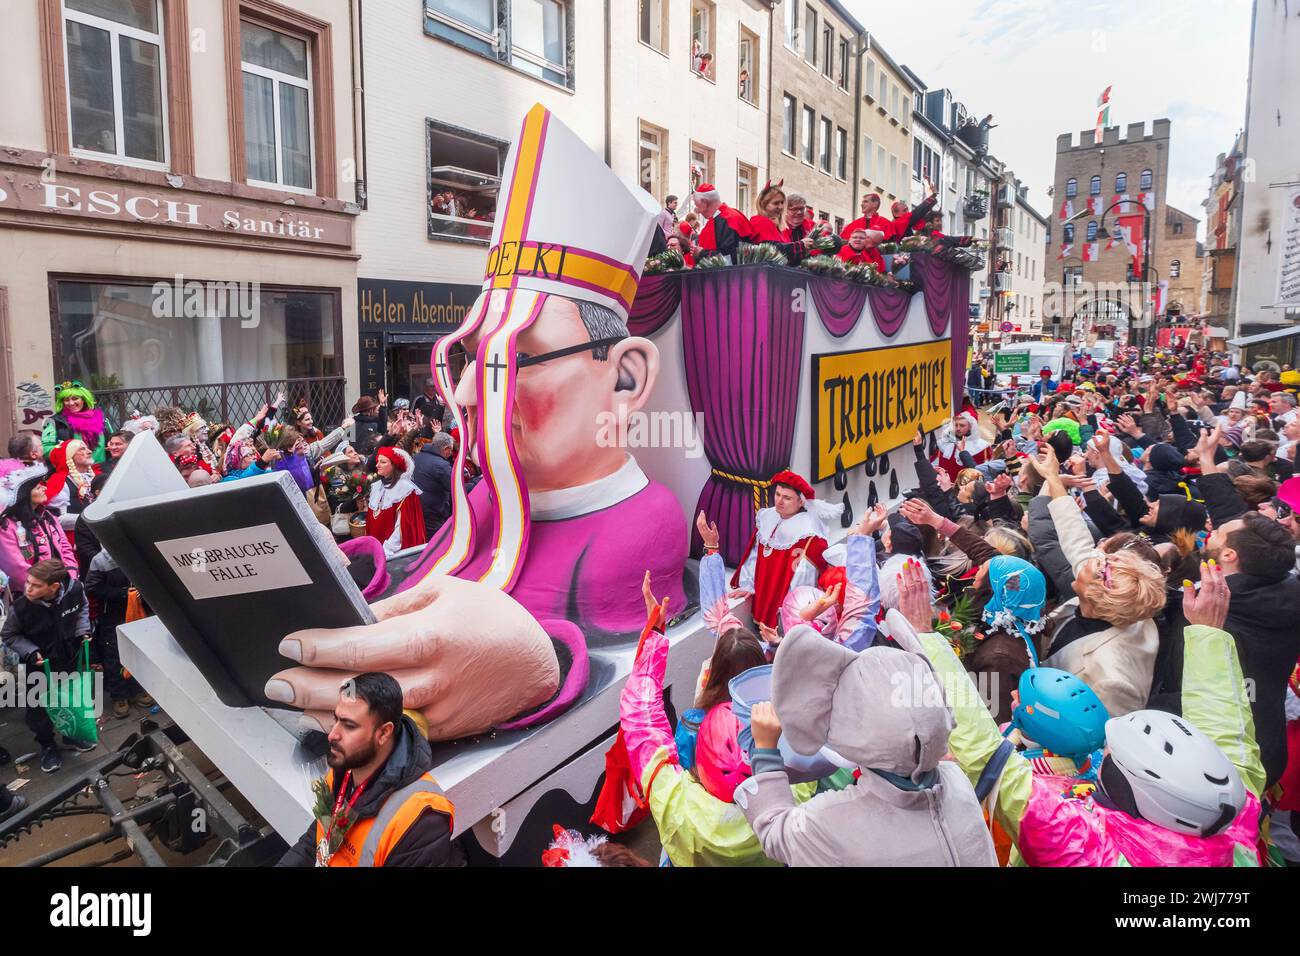 Karneval, Rosenmontag in Köln, „Trauerspiel“ Ein Trauerspiel ist allein schon die Tatsache, dass der Skandal um die Missbrauchsfälle im Kölner Erzbi Foto Stock